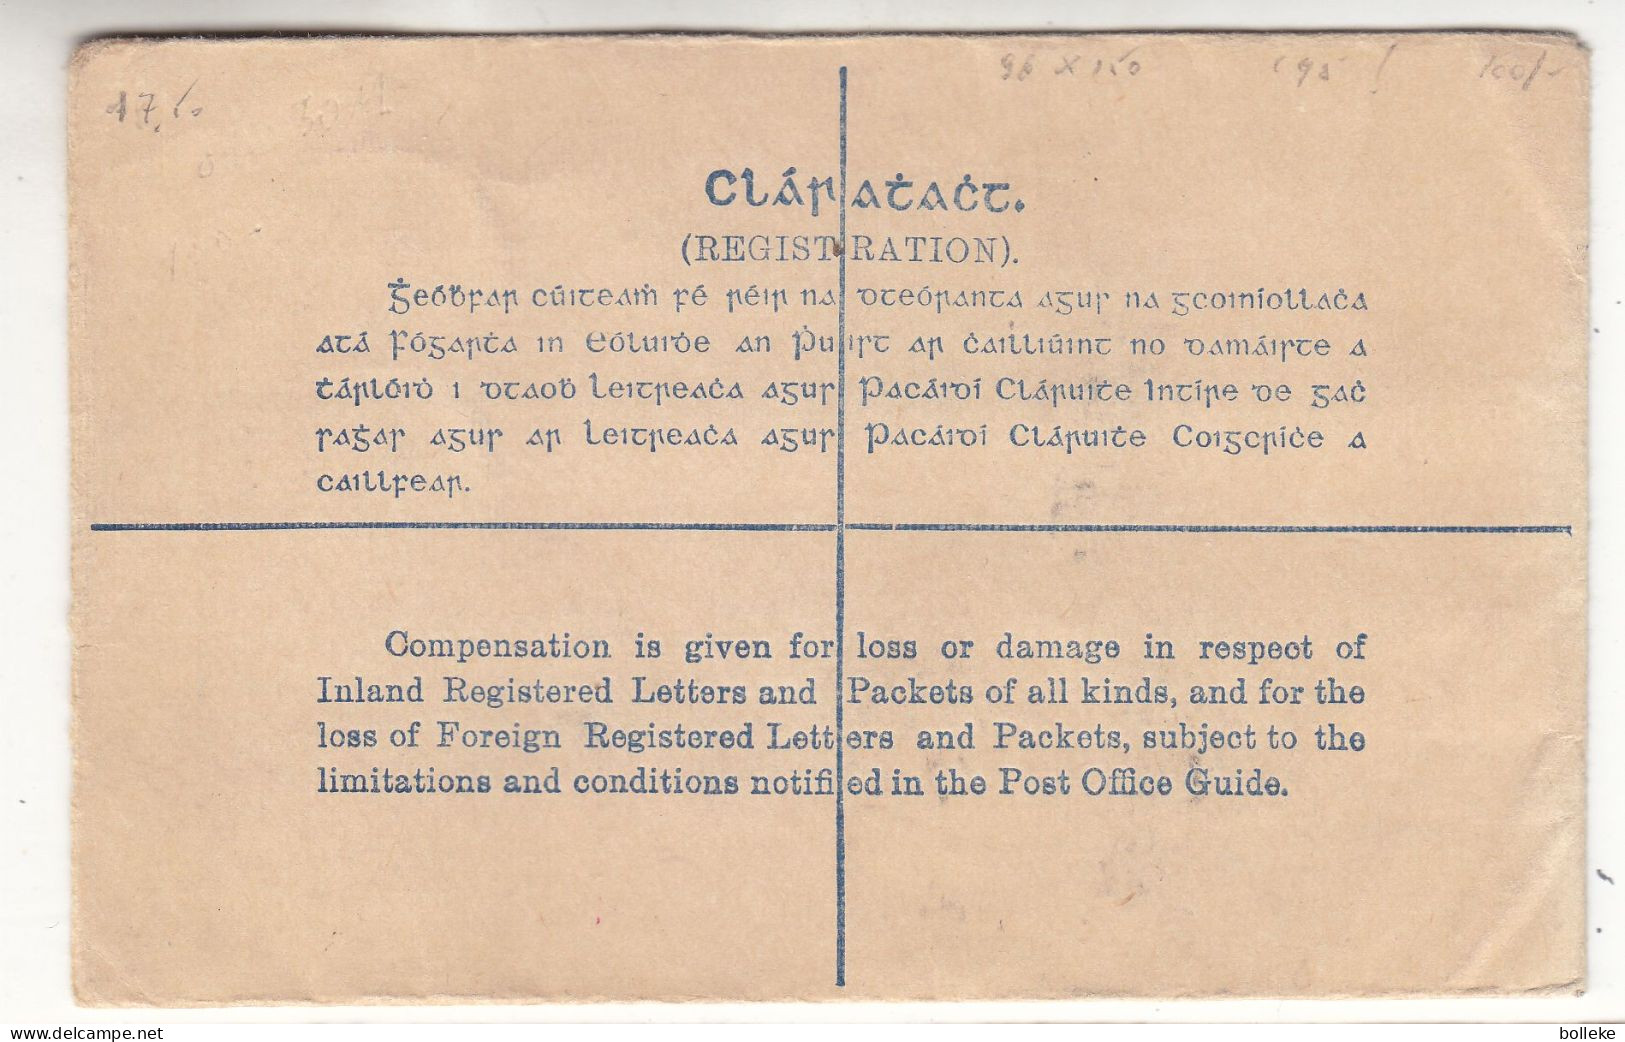 Irlande - Lettre De 1931 - Entier Postal - Expédié Vers Anvers - Mesure 96 X 150 - Valeur 95 €  ! - Brieven En Documenten